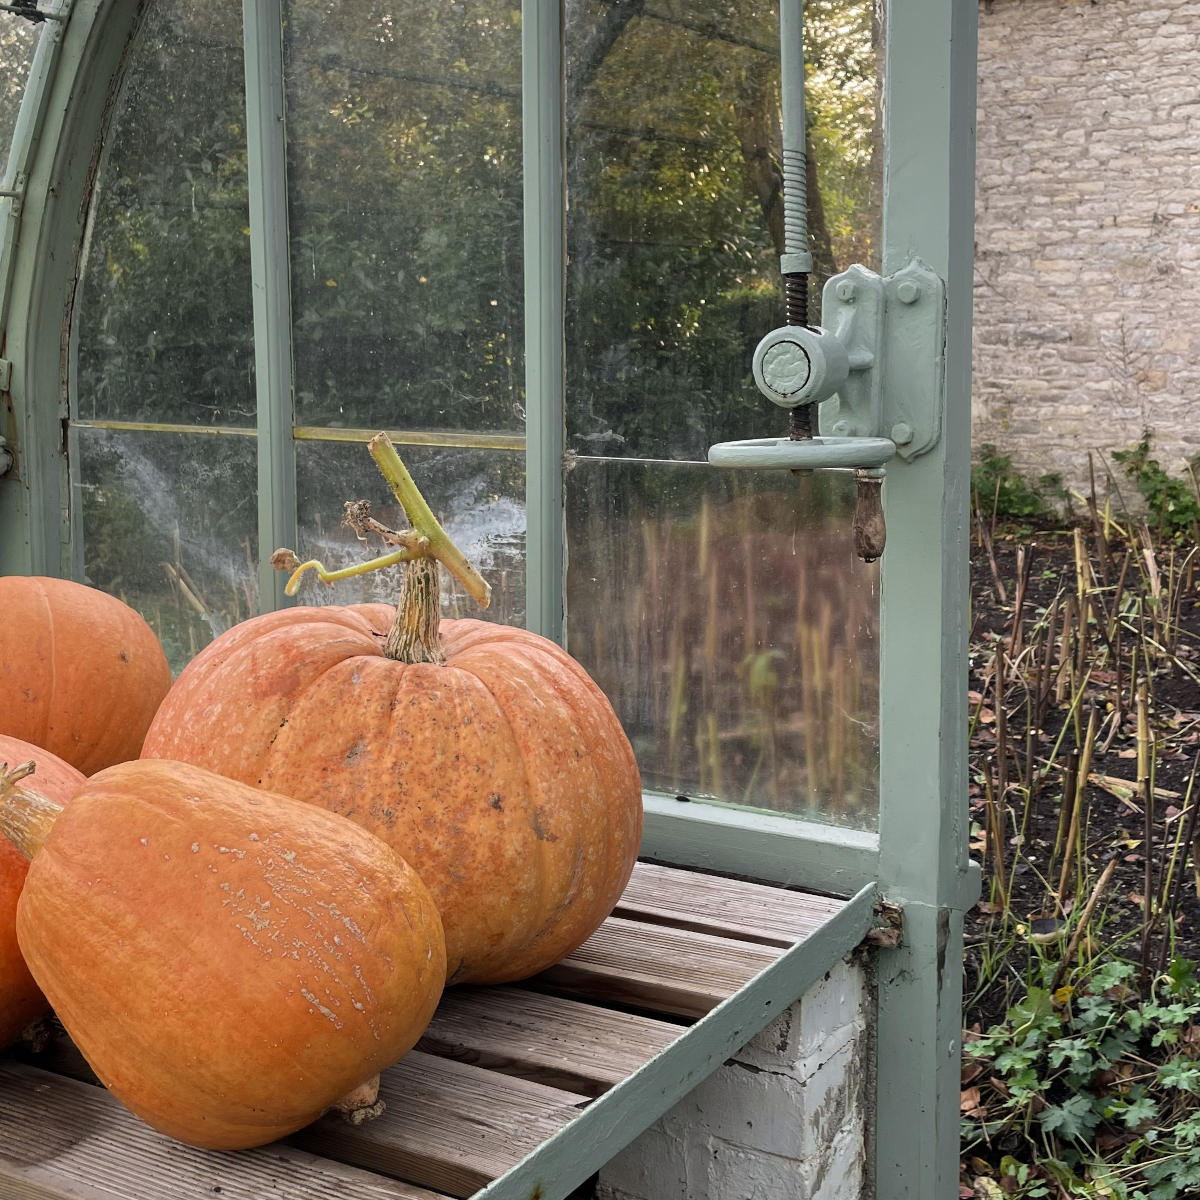 Pumpkins in a greenhouse